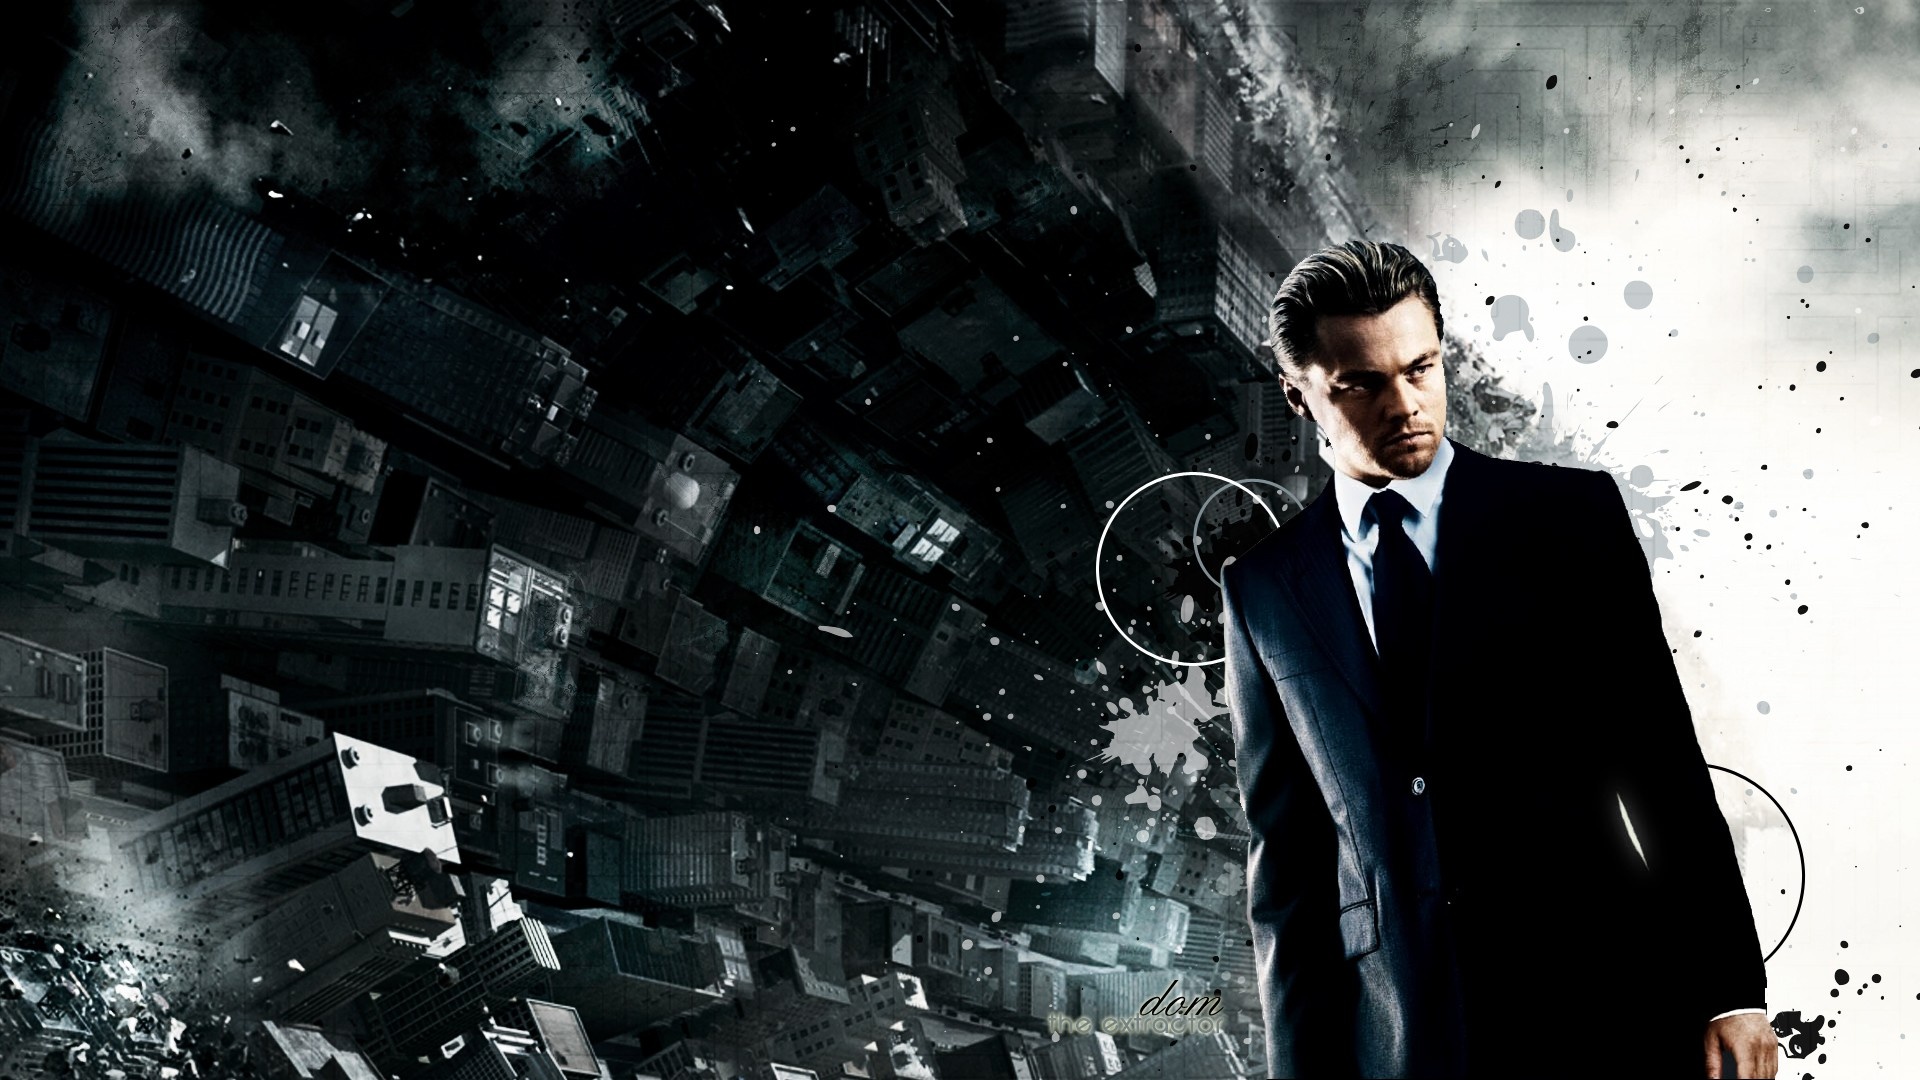 Inception: Leonardo DiCaprio as Dom Cobb, a professional thief. 1920x1080 Full HD Background.